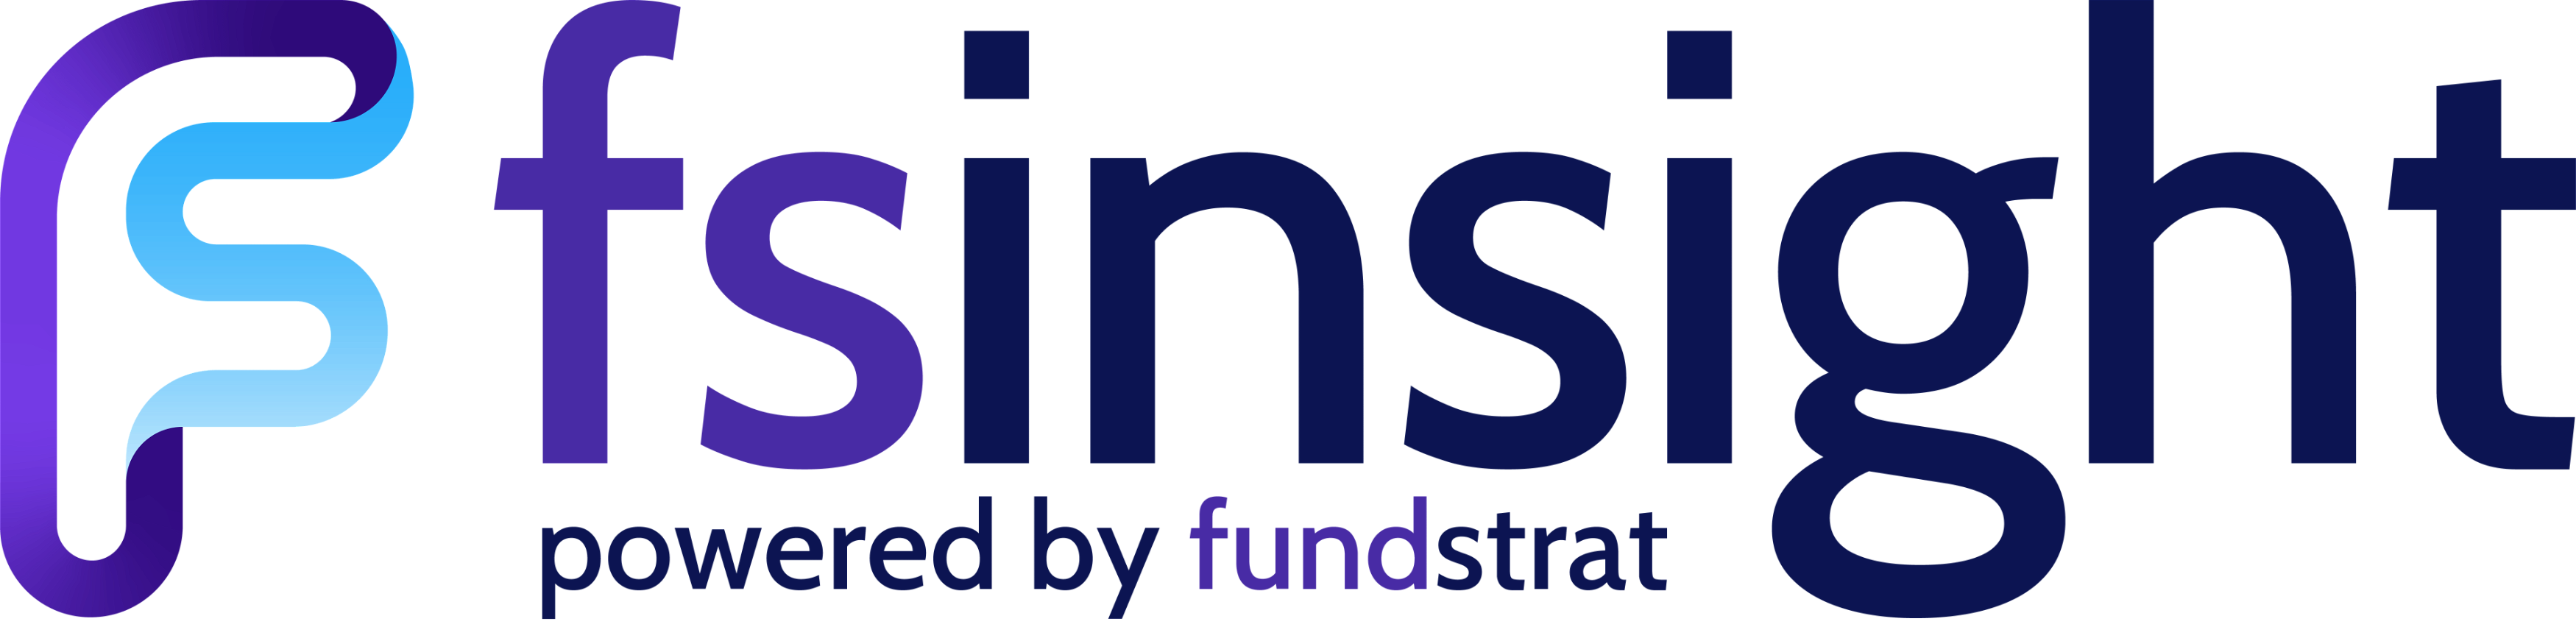 FS Insight logo